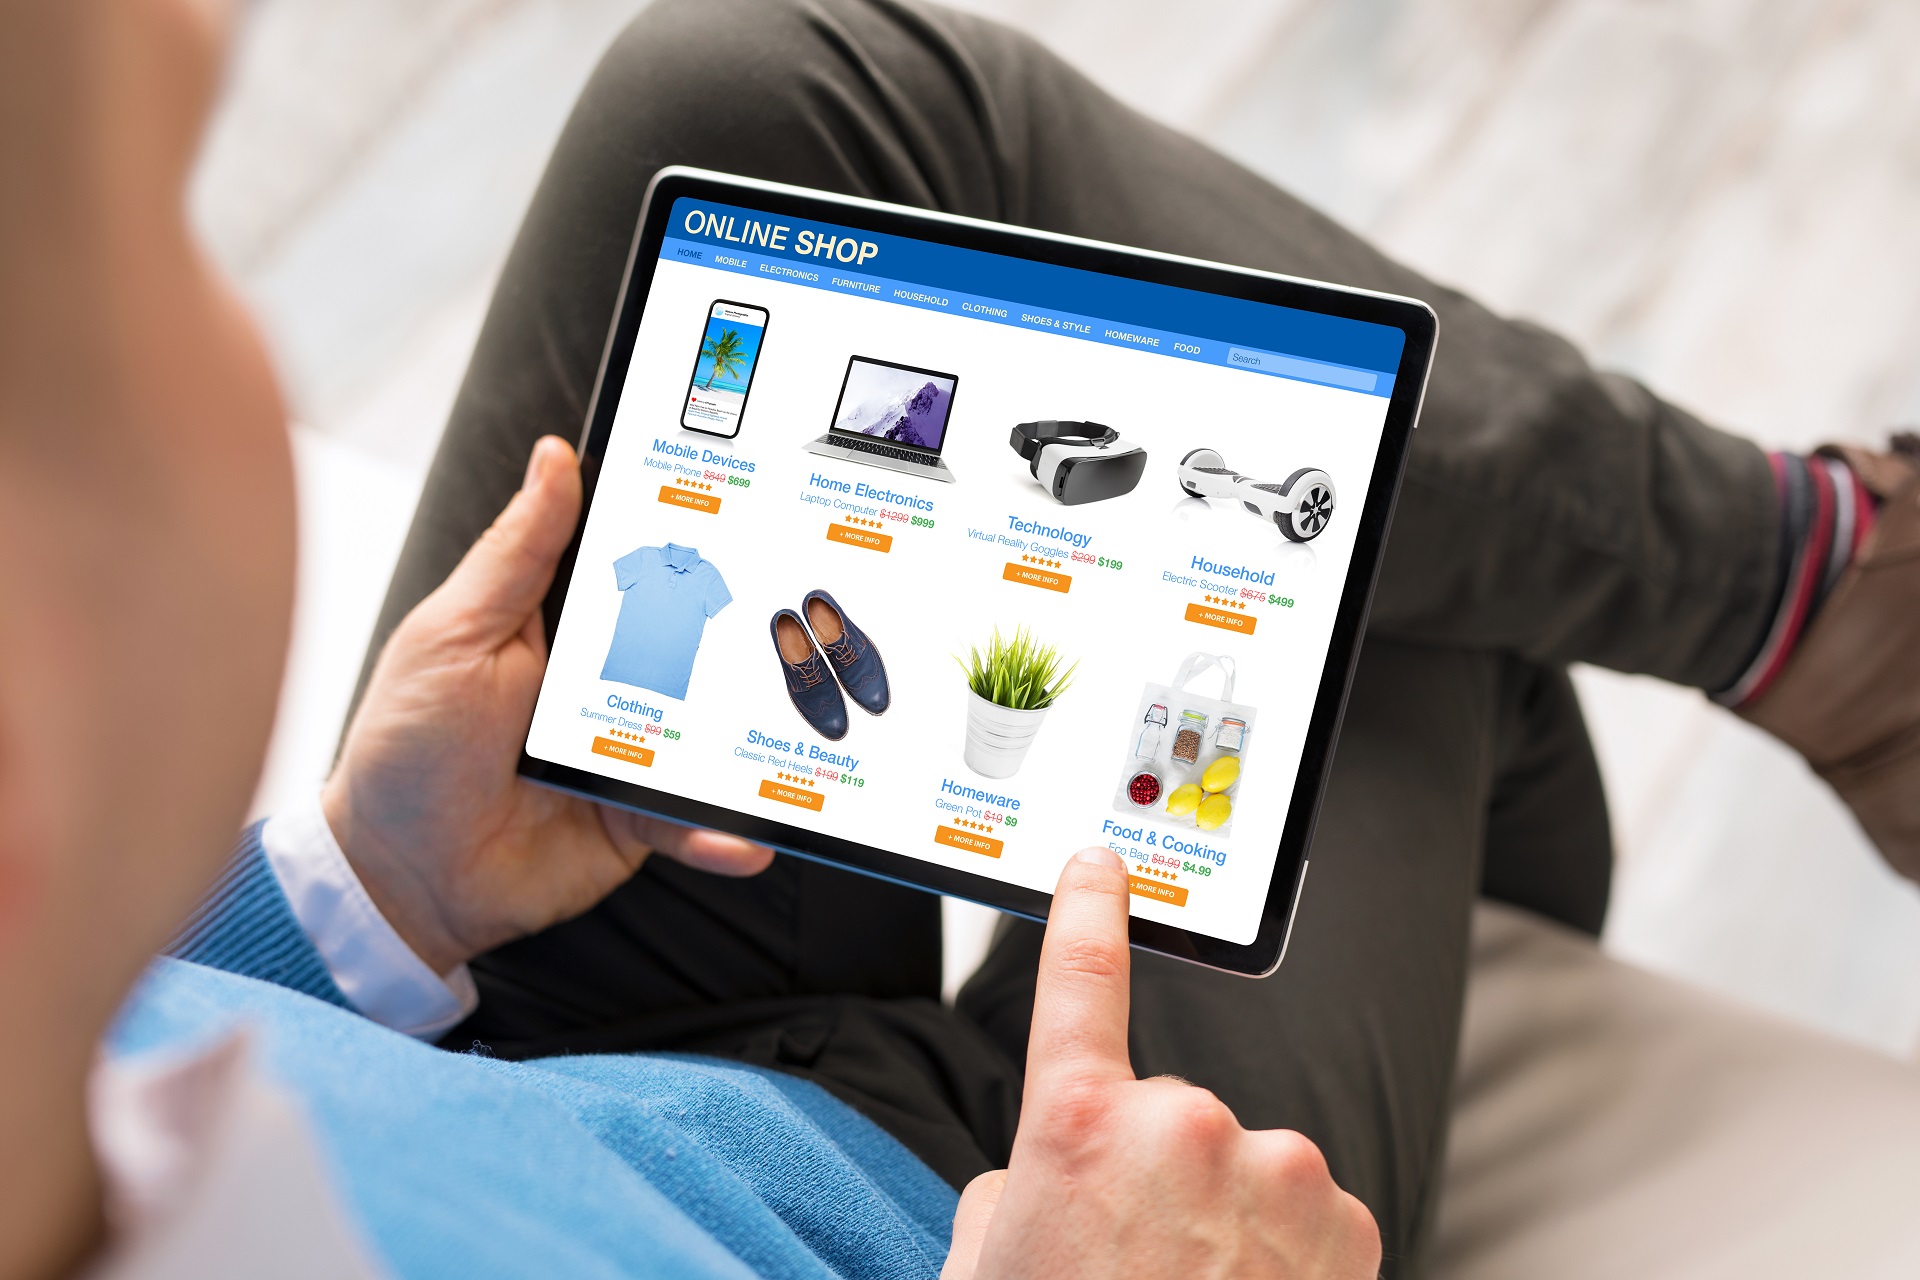 M-Commerce oder Mobile Commerce bezeichnet den elektronischen Handel mittels mobiler Endgeräte wie Smartphone oder Tablet.